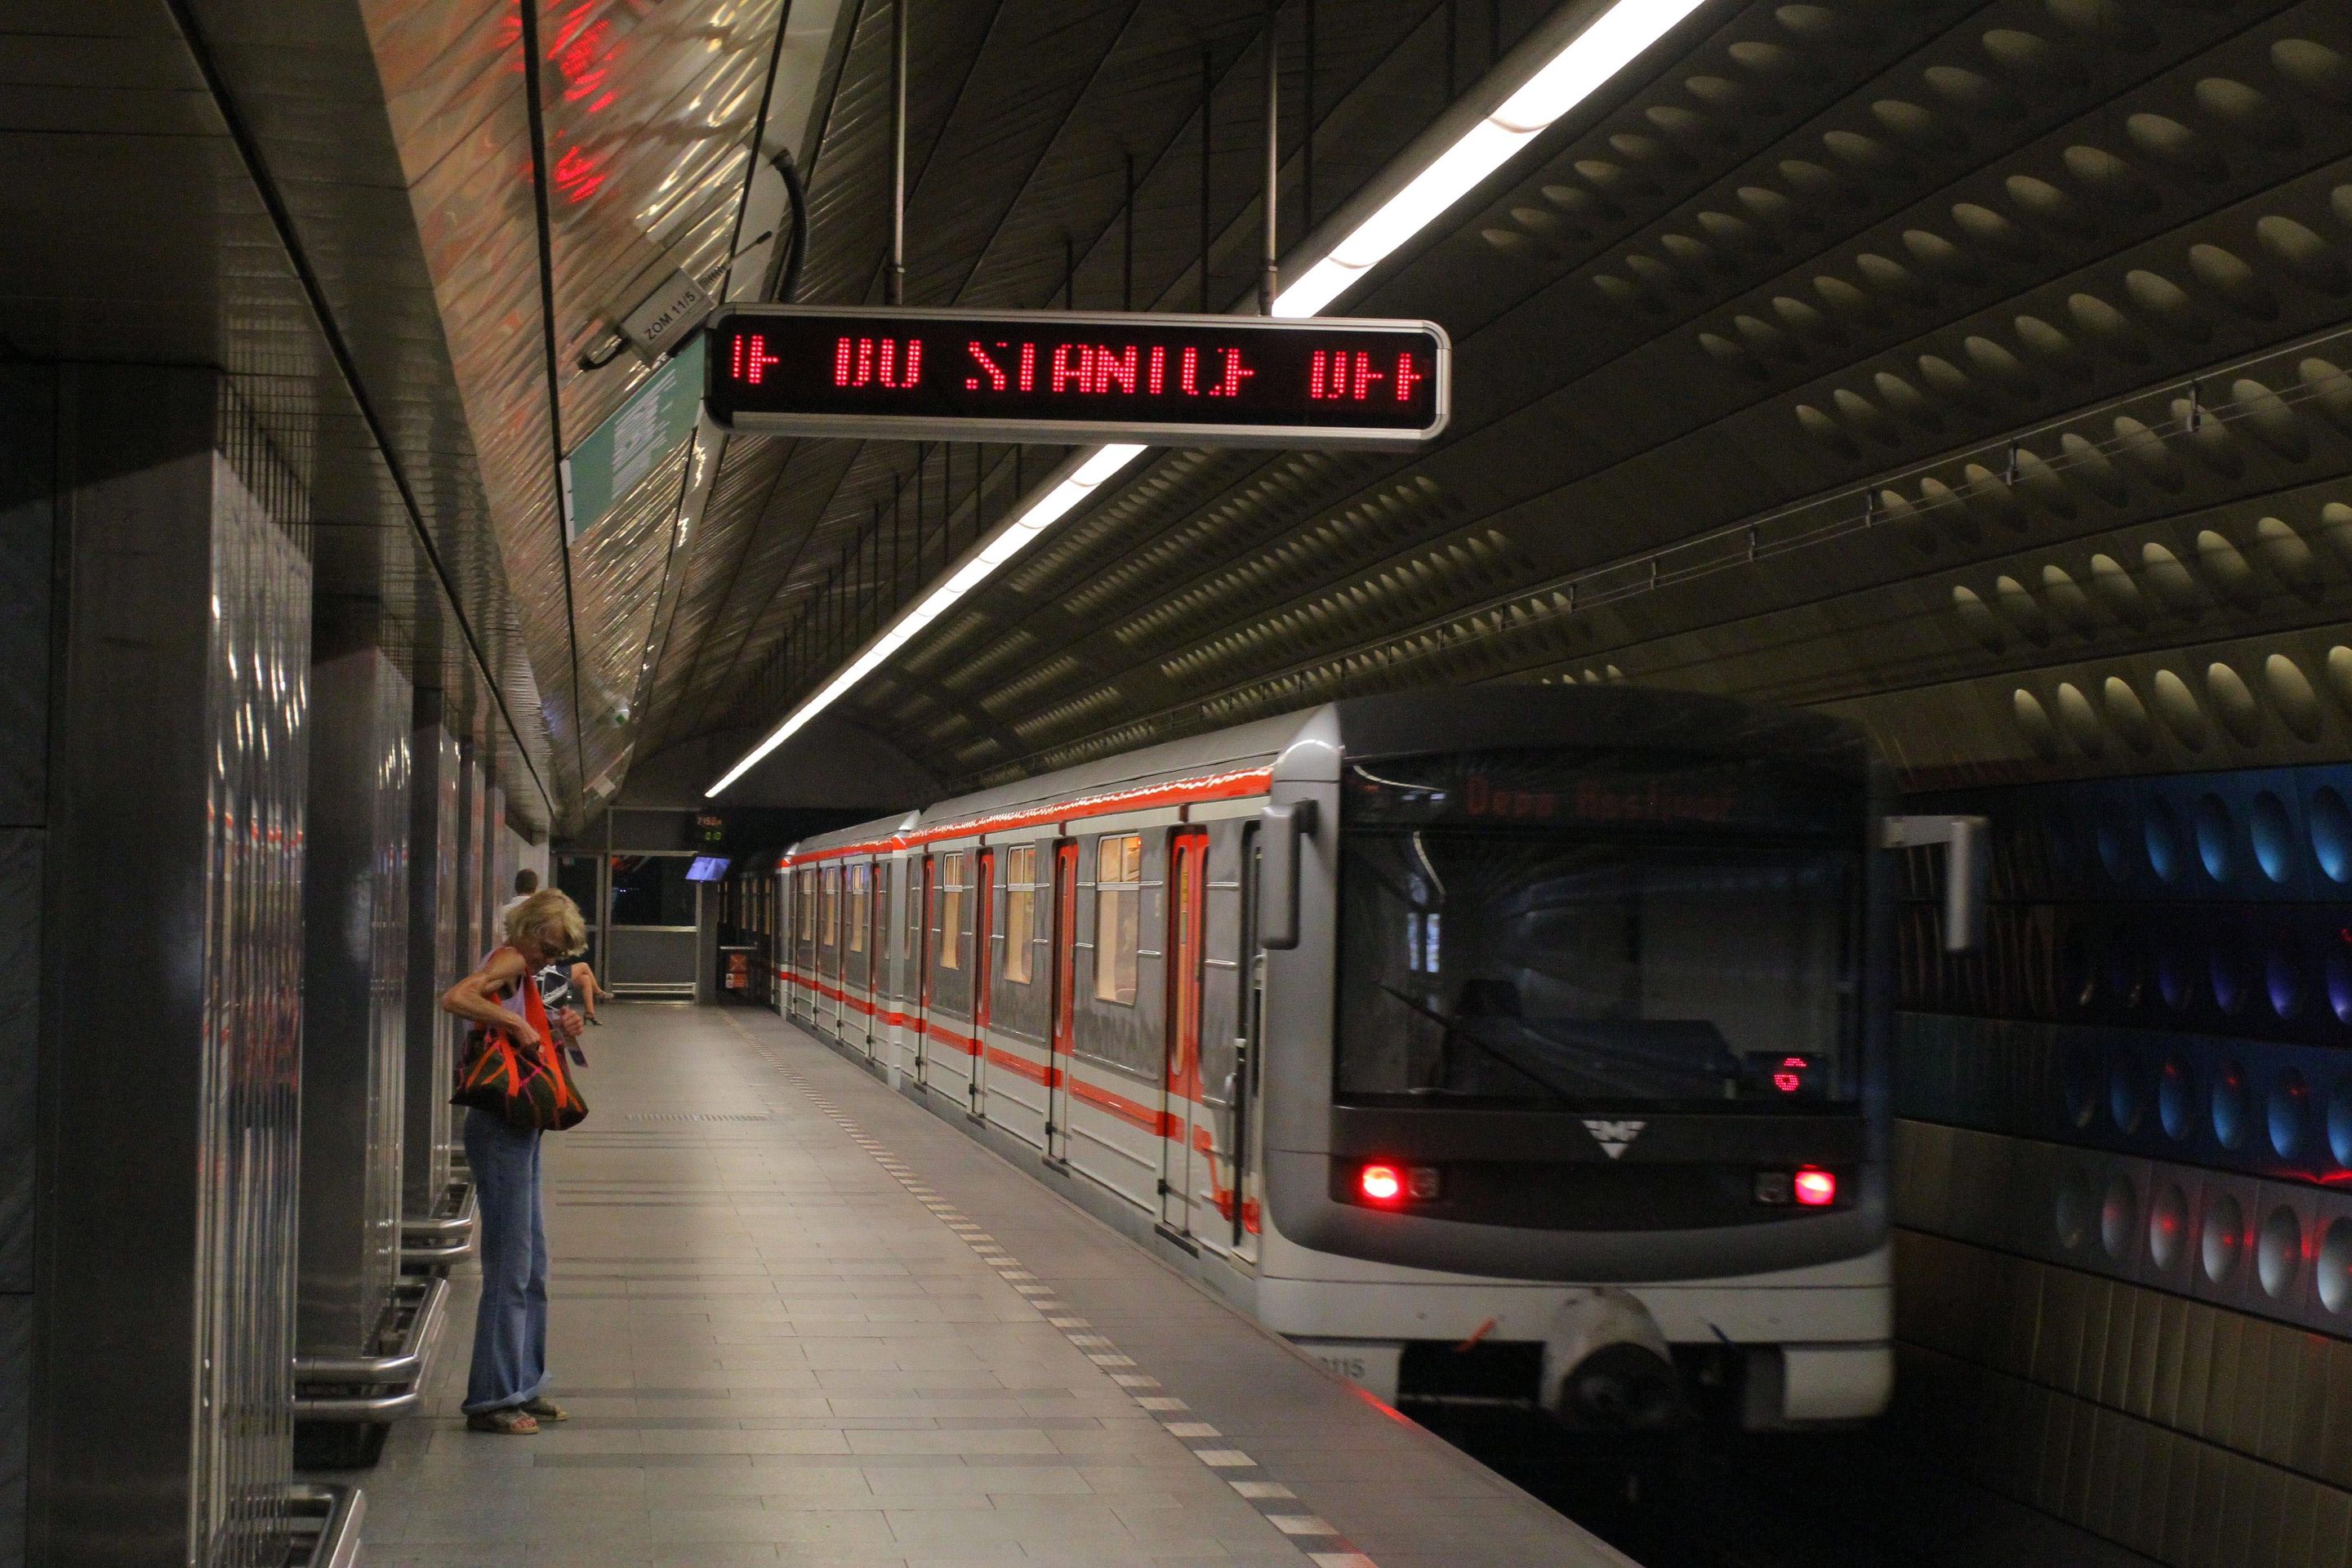 Uzavřená trasa A pražského metra - 2 - Uzavřené metro na lince A (9/10)